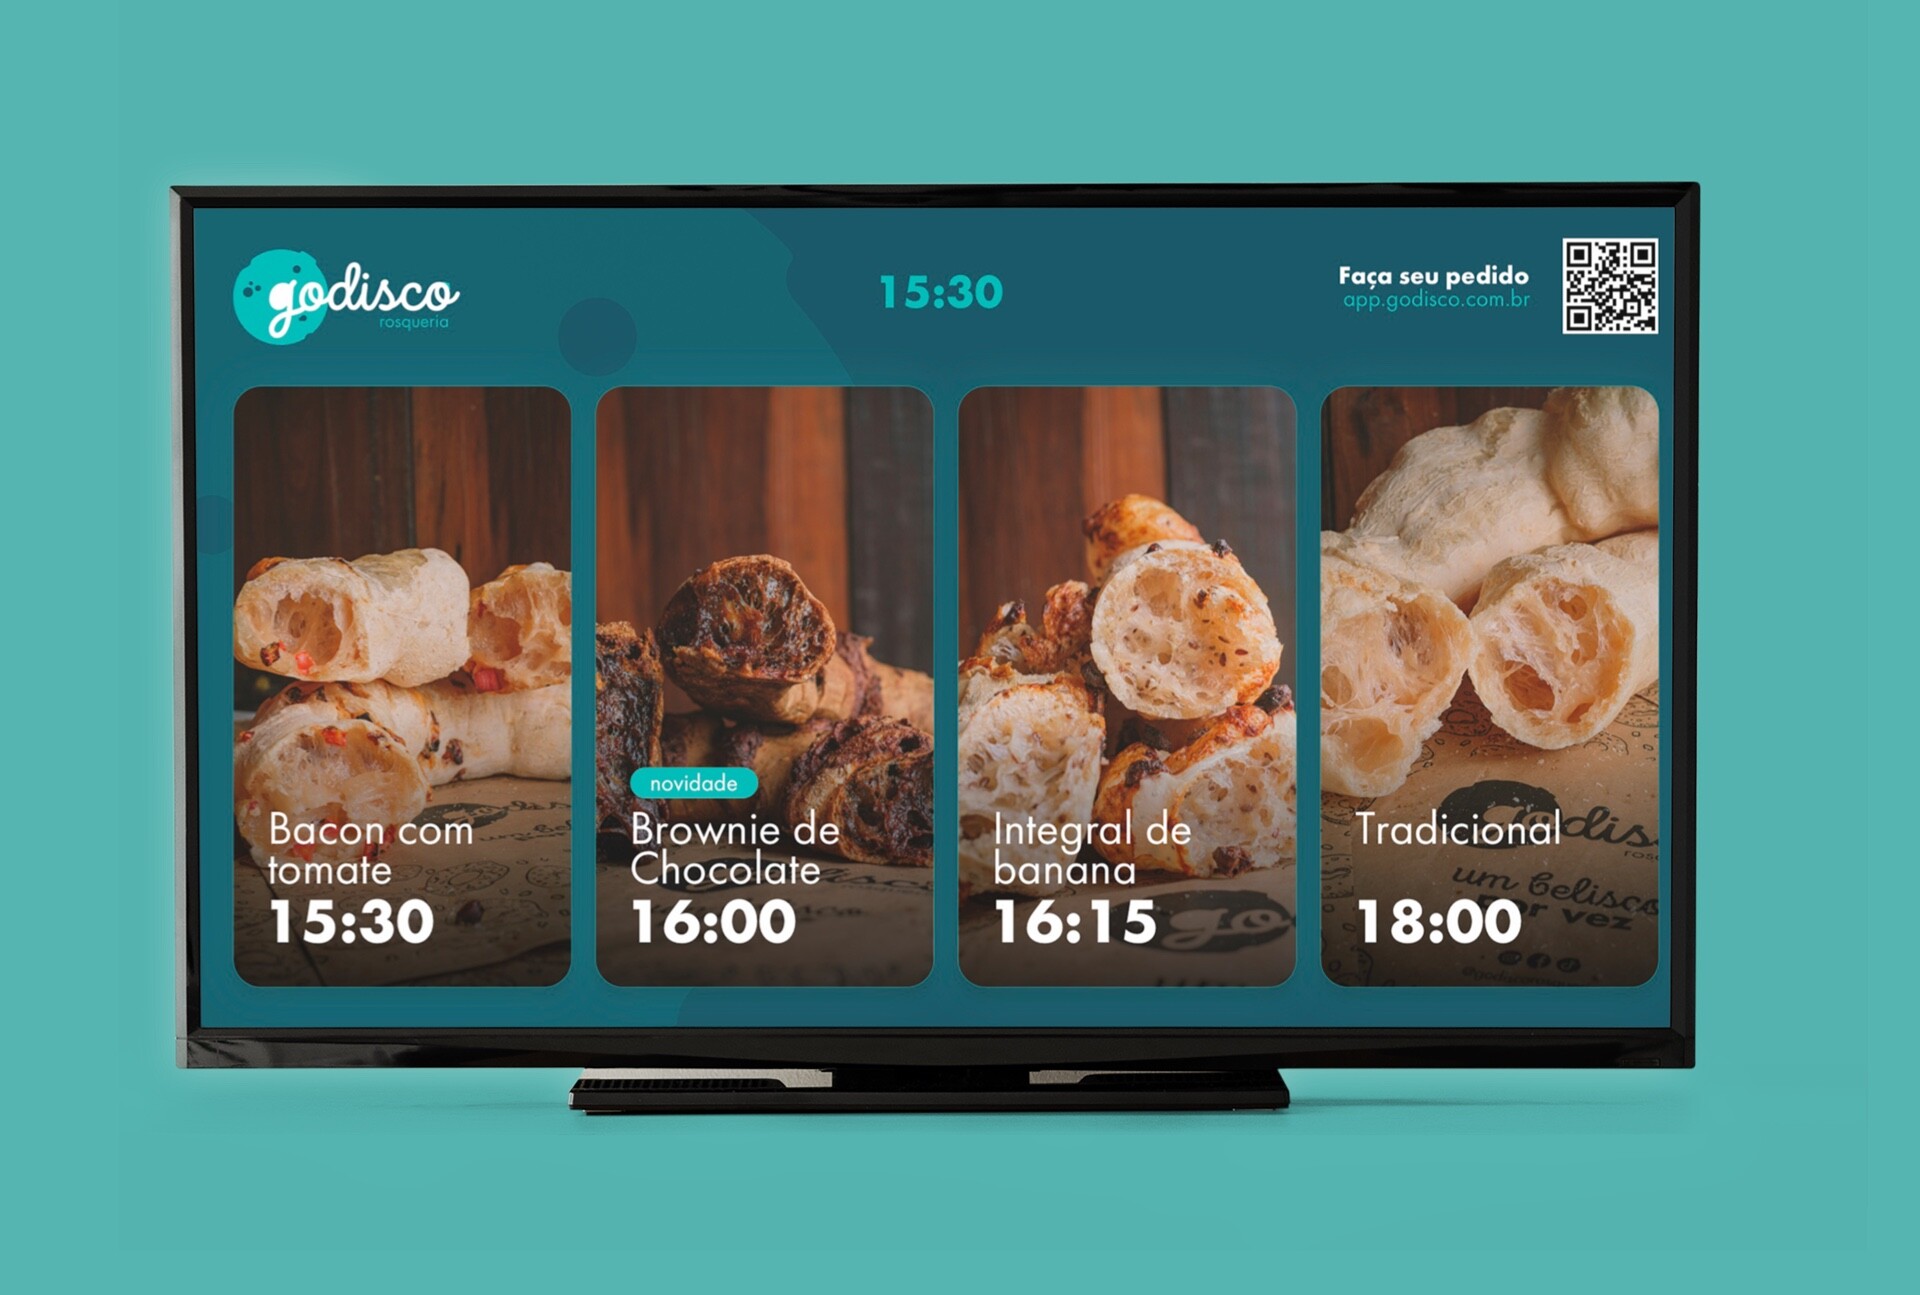 Imagem 2 - Aplicativo para TV desenvolvido para a GoDisco Rosqueria